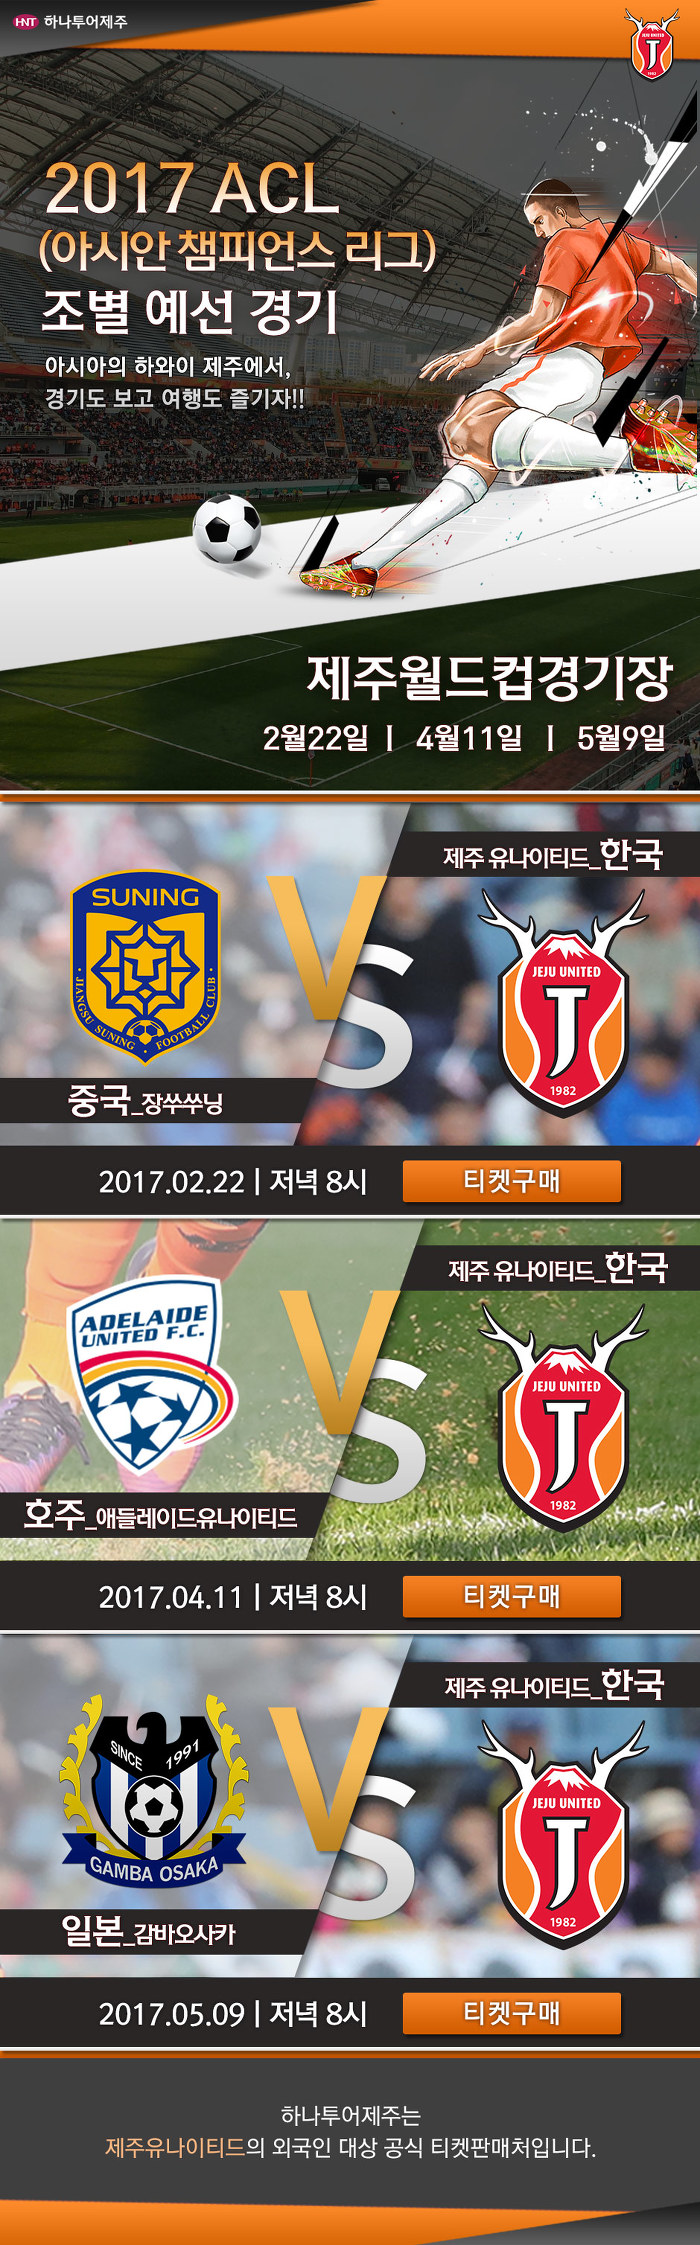 2017 아시안 챔피언스 리그 제주 일정! - 제주도 축구 여행